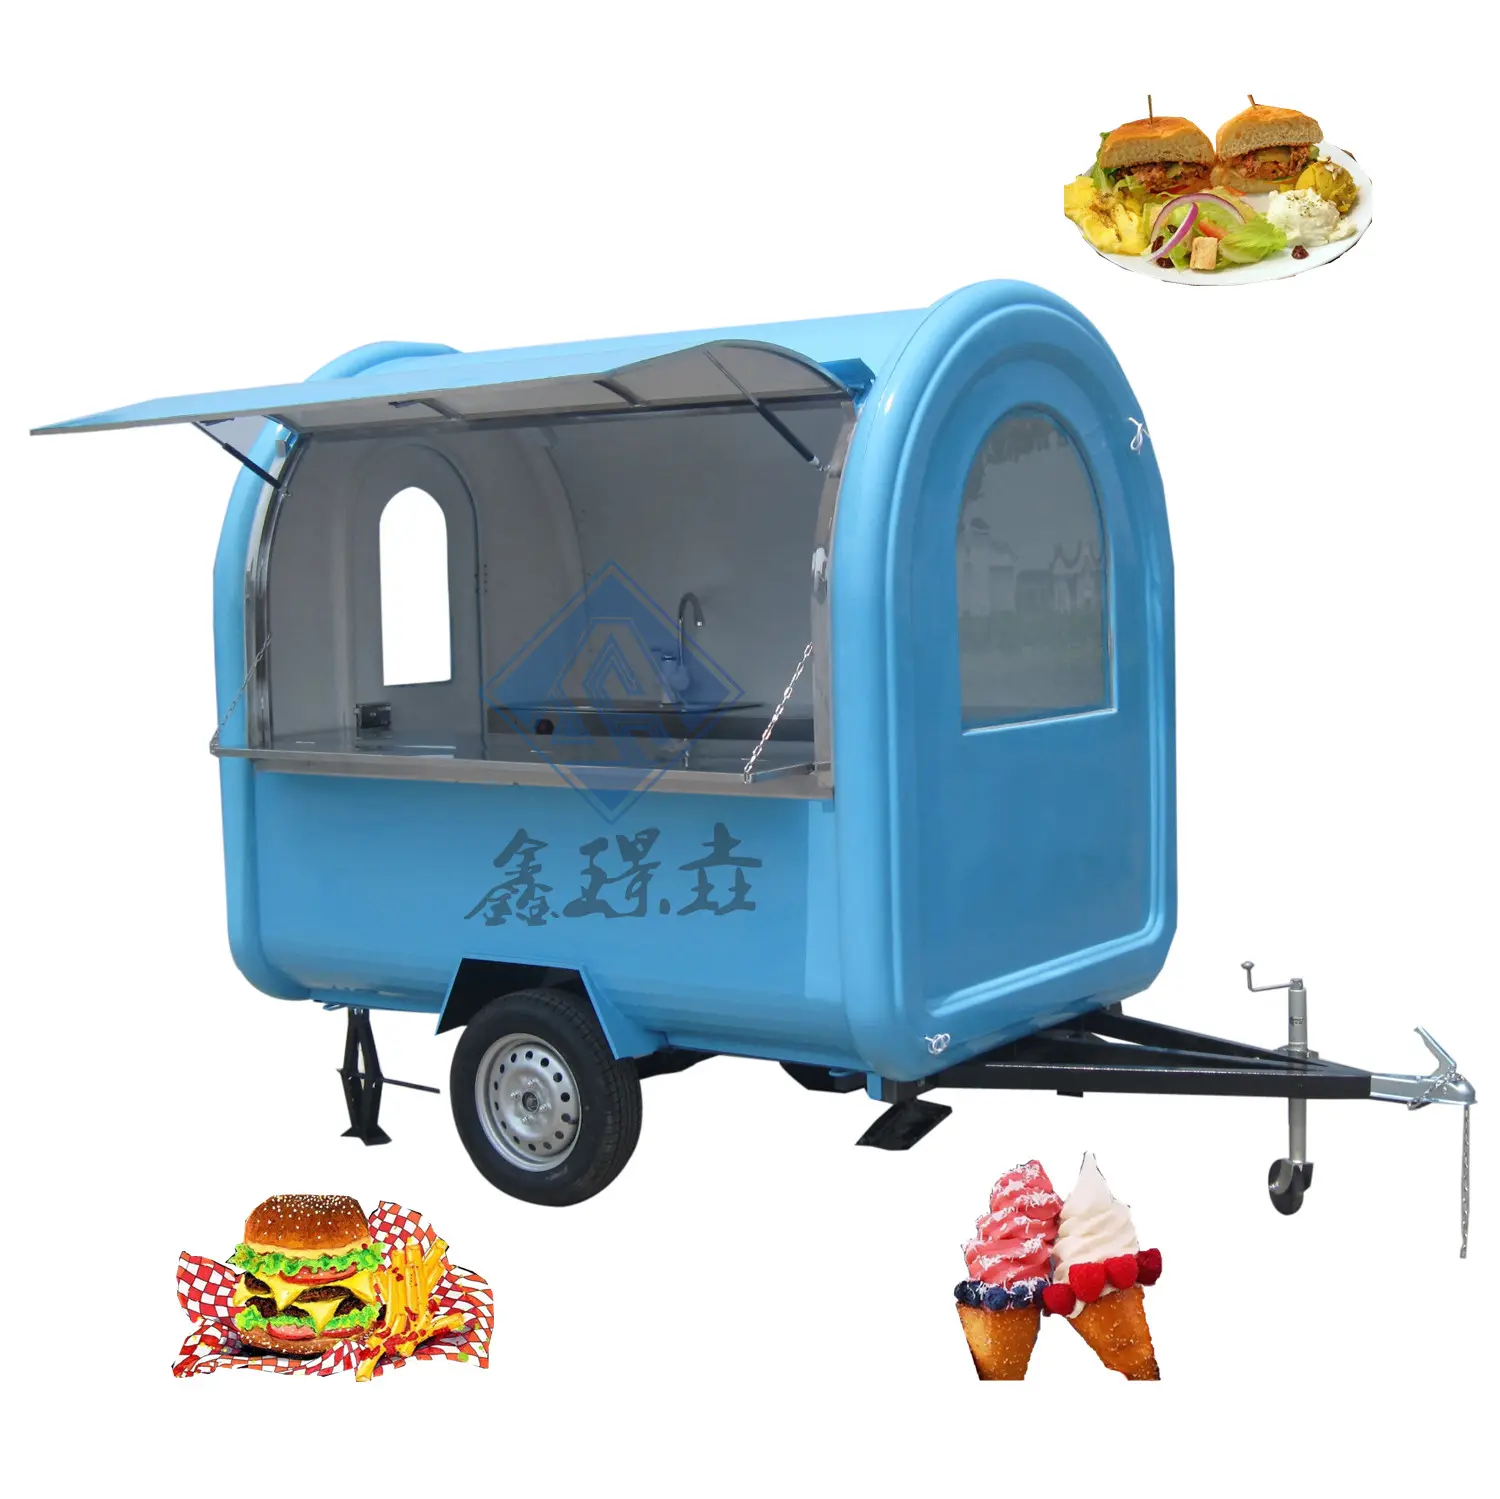 Großhandels preis Verschiedene Größen und Arten von Fast-Food-LKWs Mobile Food Trailer Catering Trailer Cart Zum Verkauf